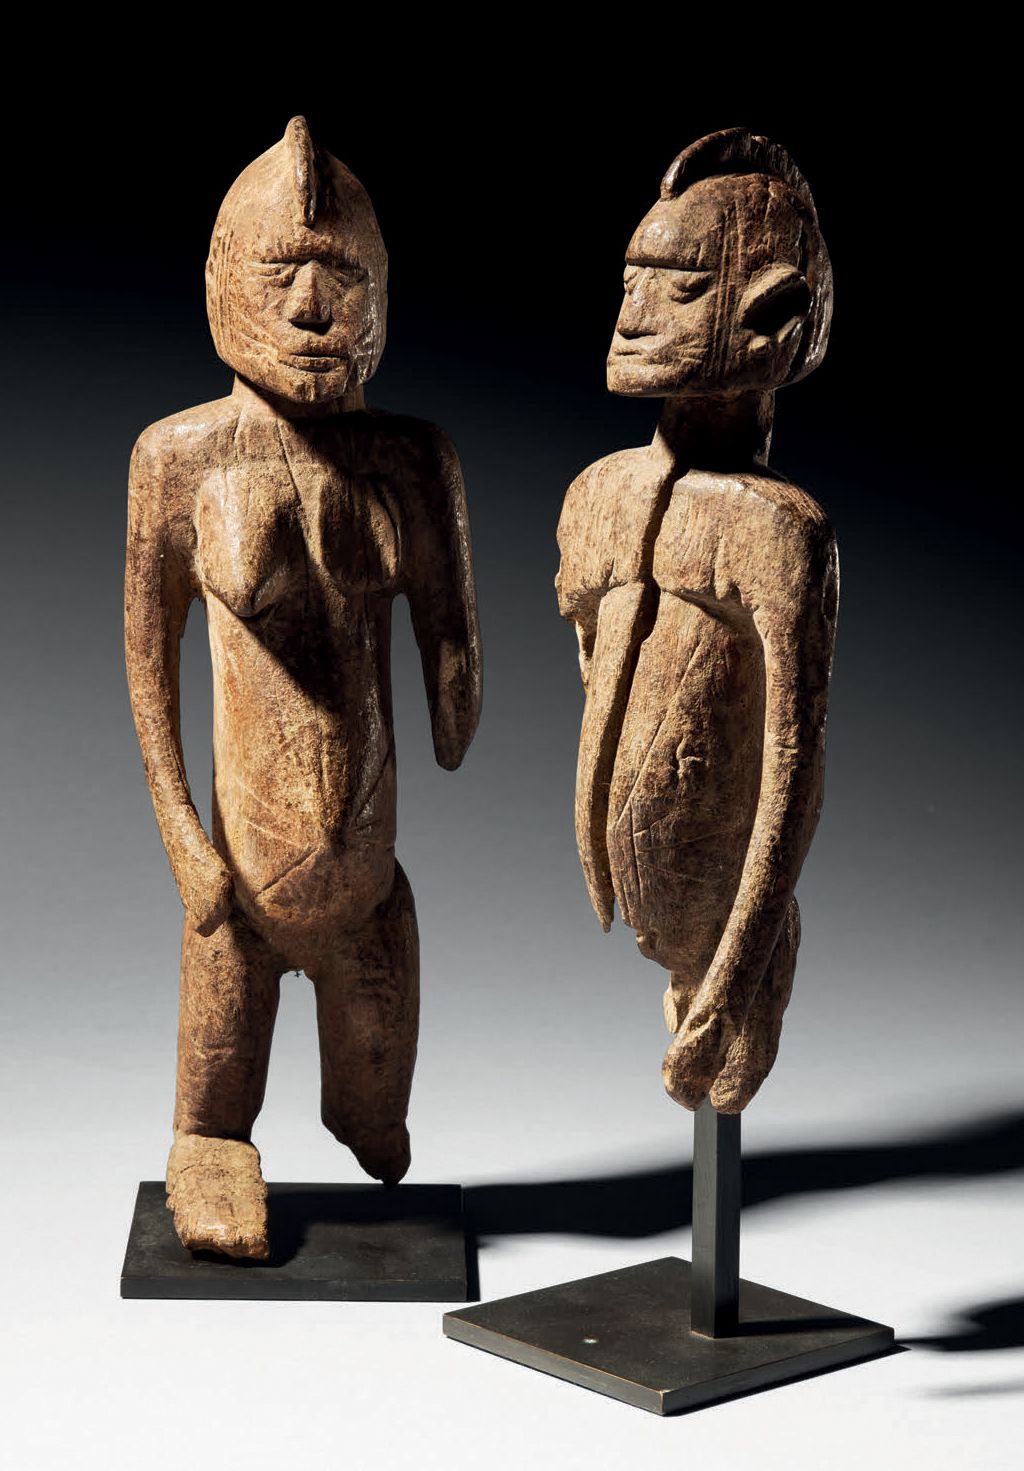 Null - STATUENPAAR DER MOSSI, BURKINA FASO
Holz
H. 28 und 23 cm
Altes Statuenpaa&hellip;